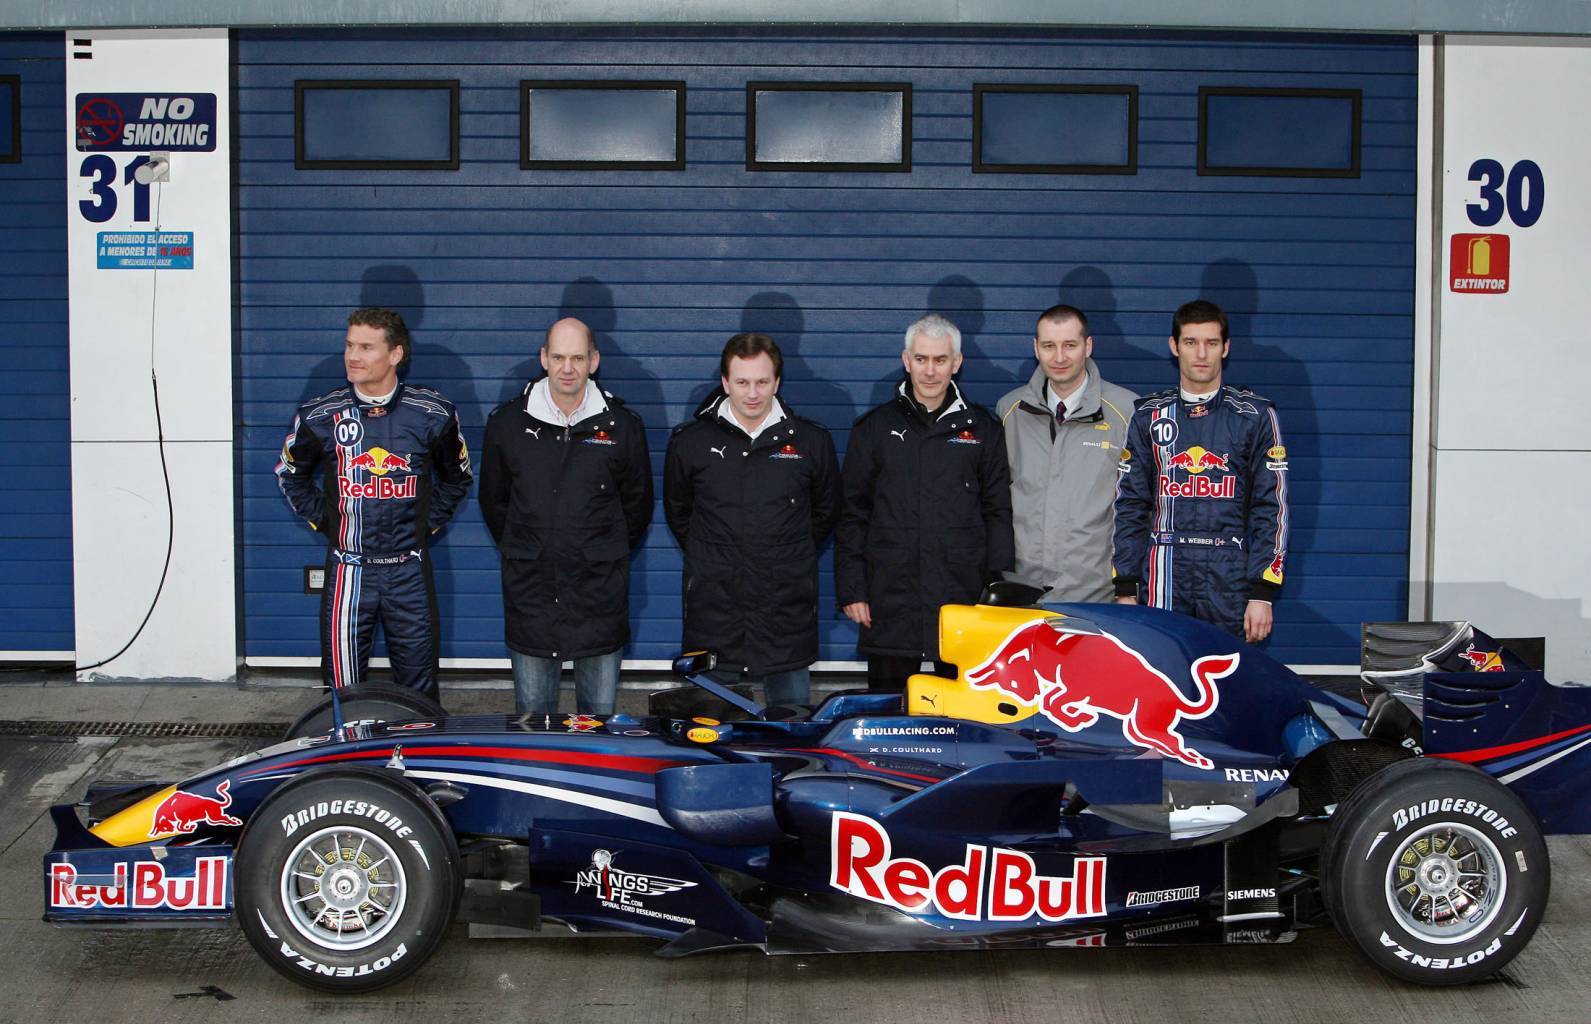 Présentation Red Bull RB4 / Page Formule 1 de Marco